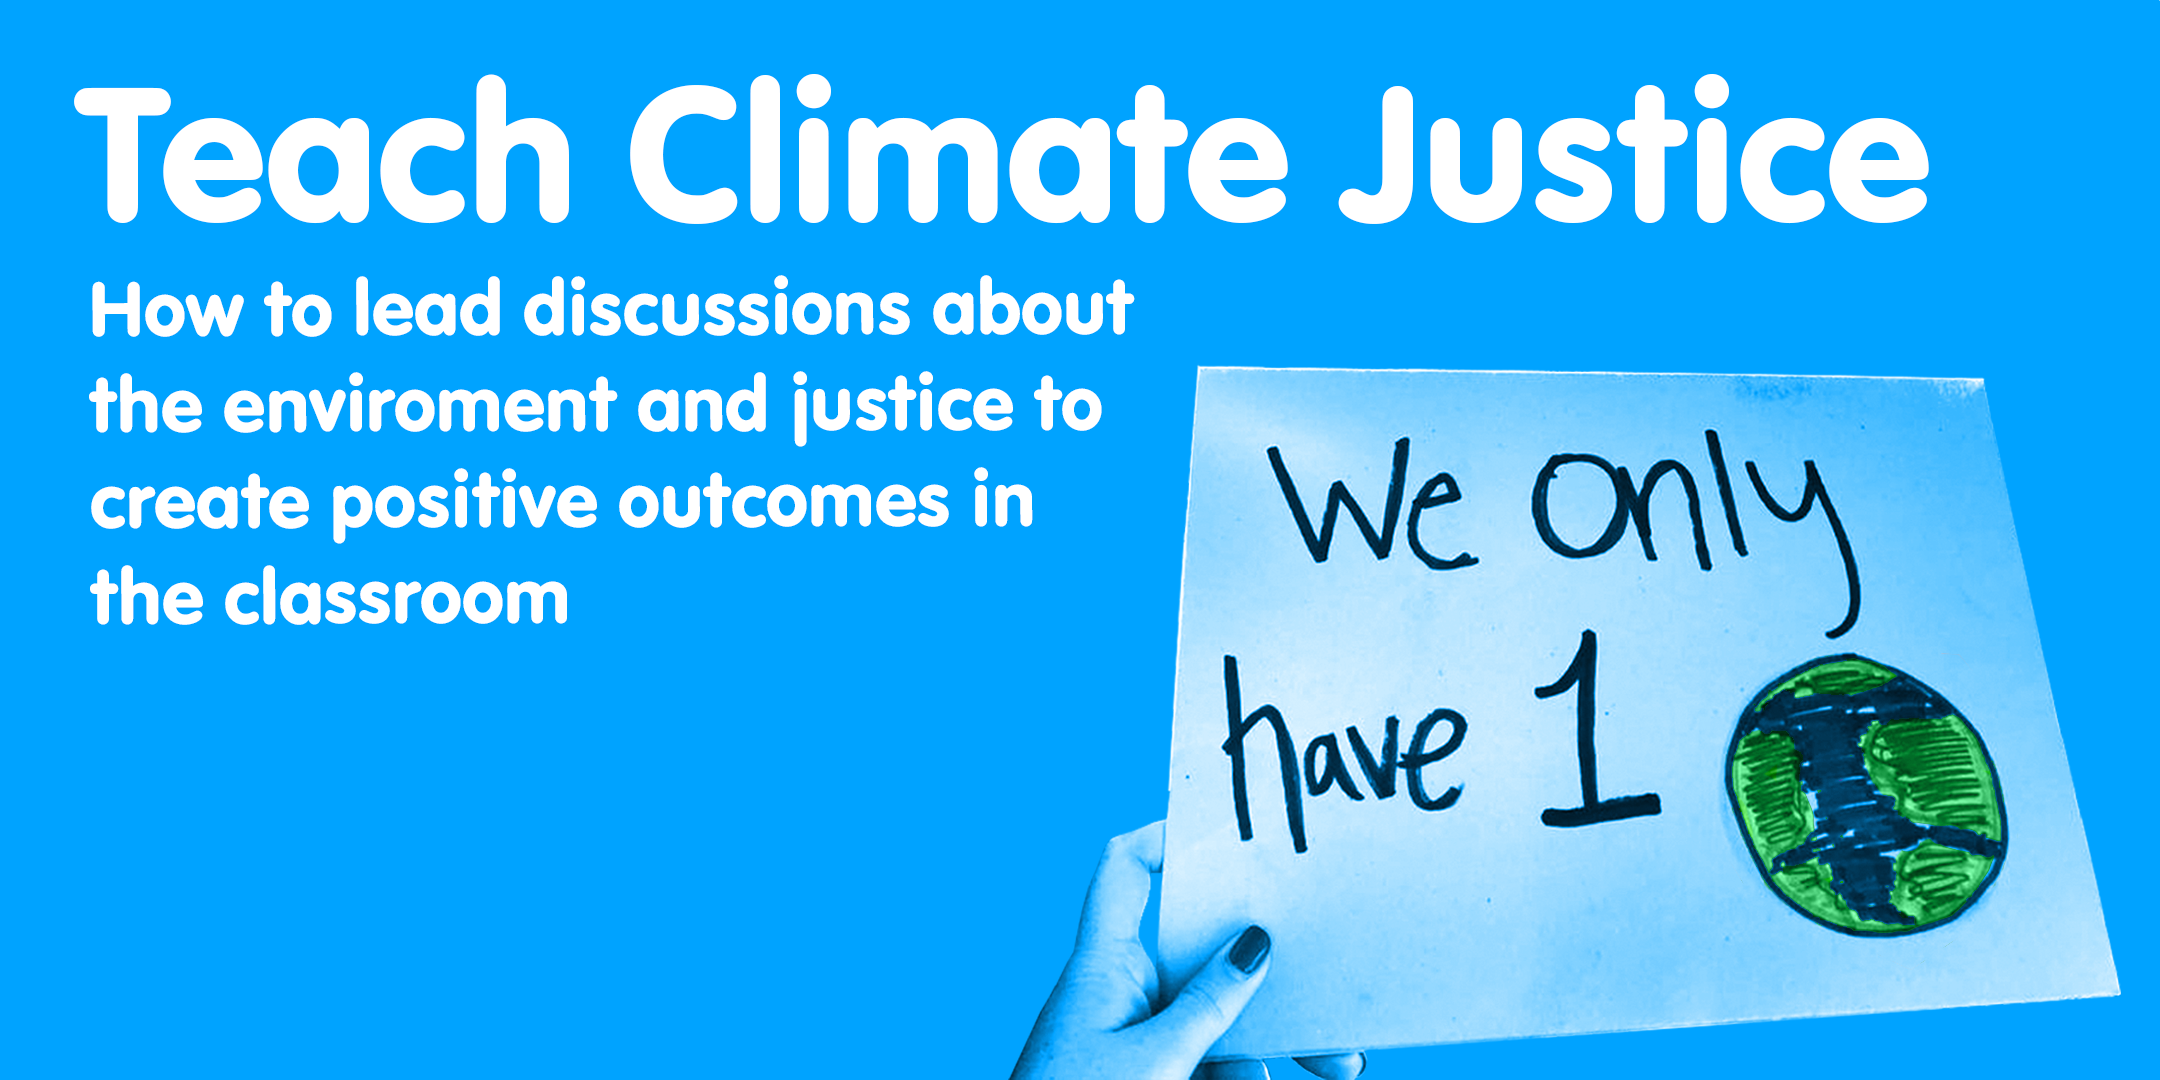 Teach Climate Justice